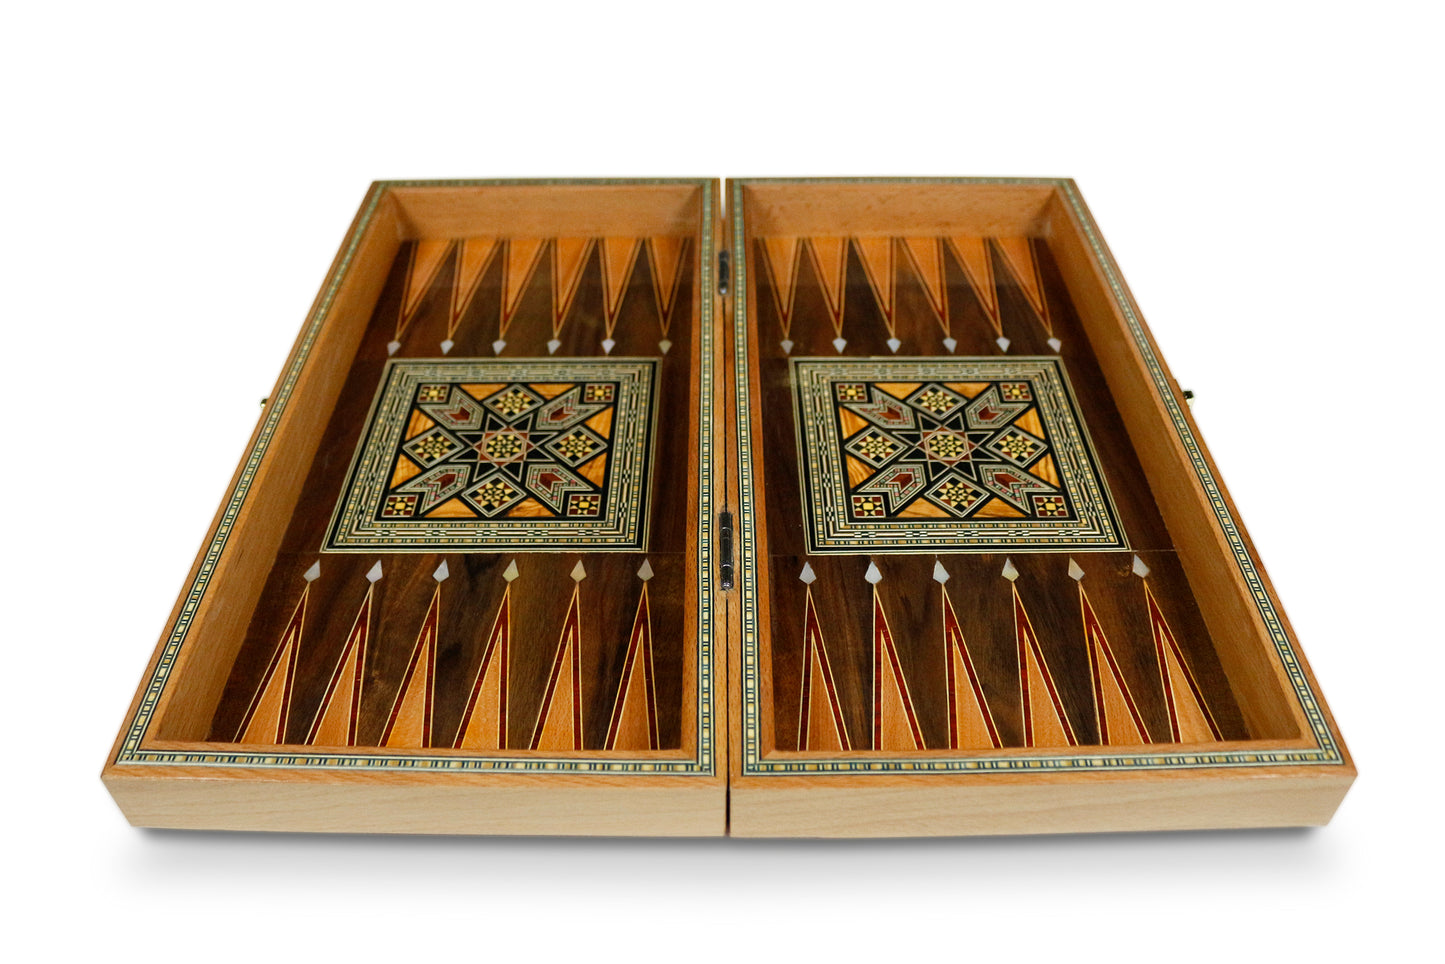 Holz Backgammon Brett BT414